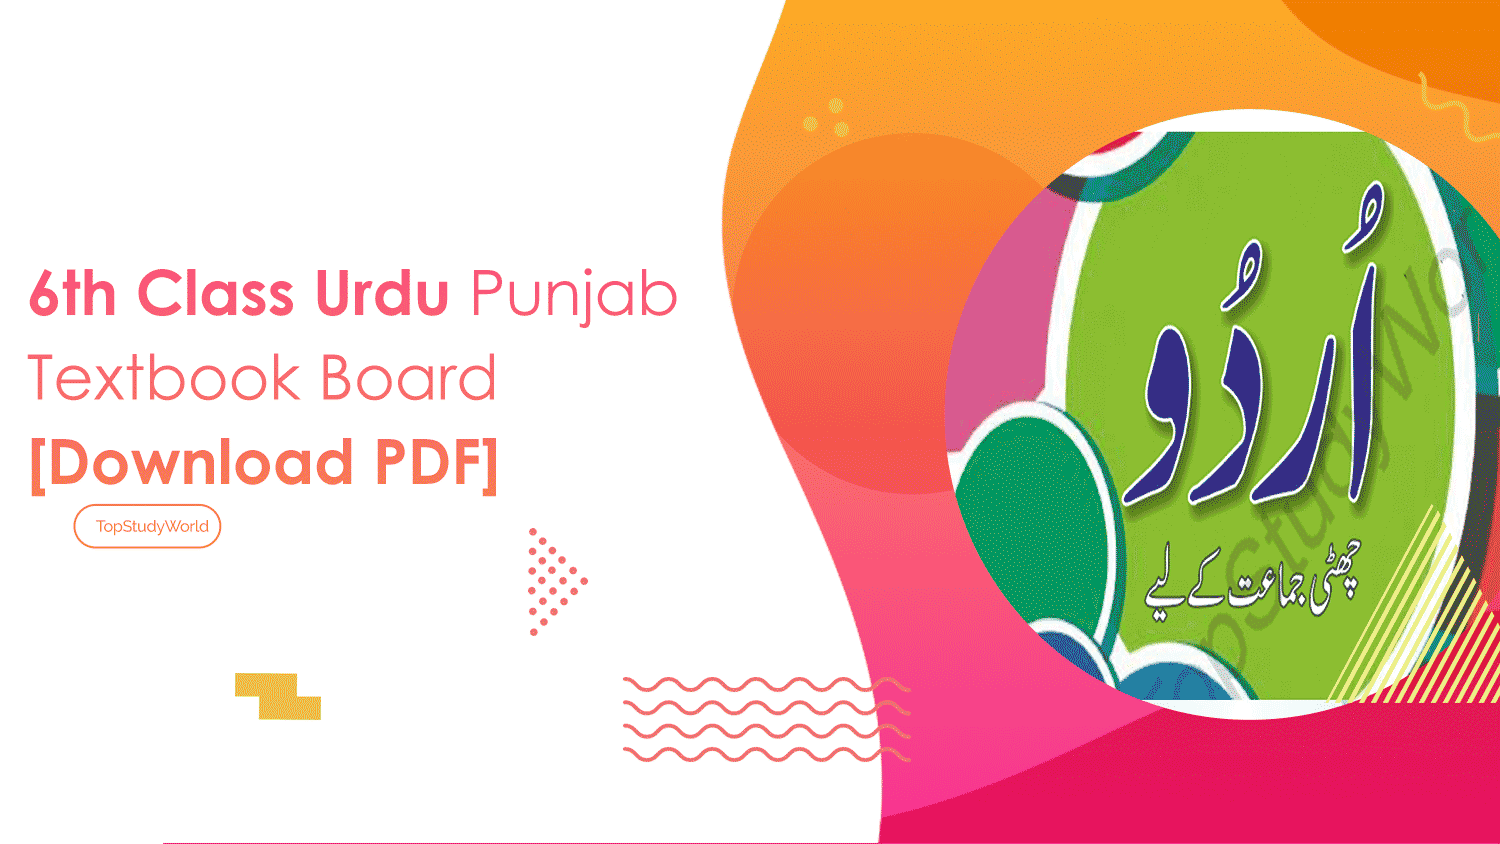 6th Class Urdu Punjab Textbook Board [Download PDF]